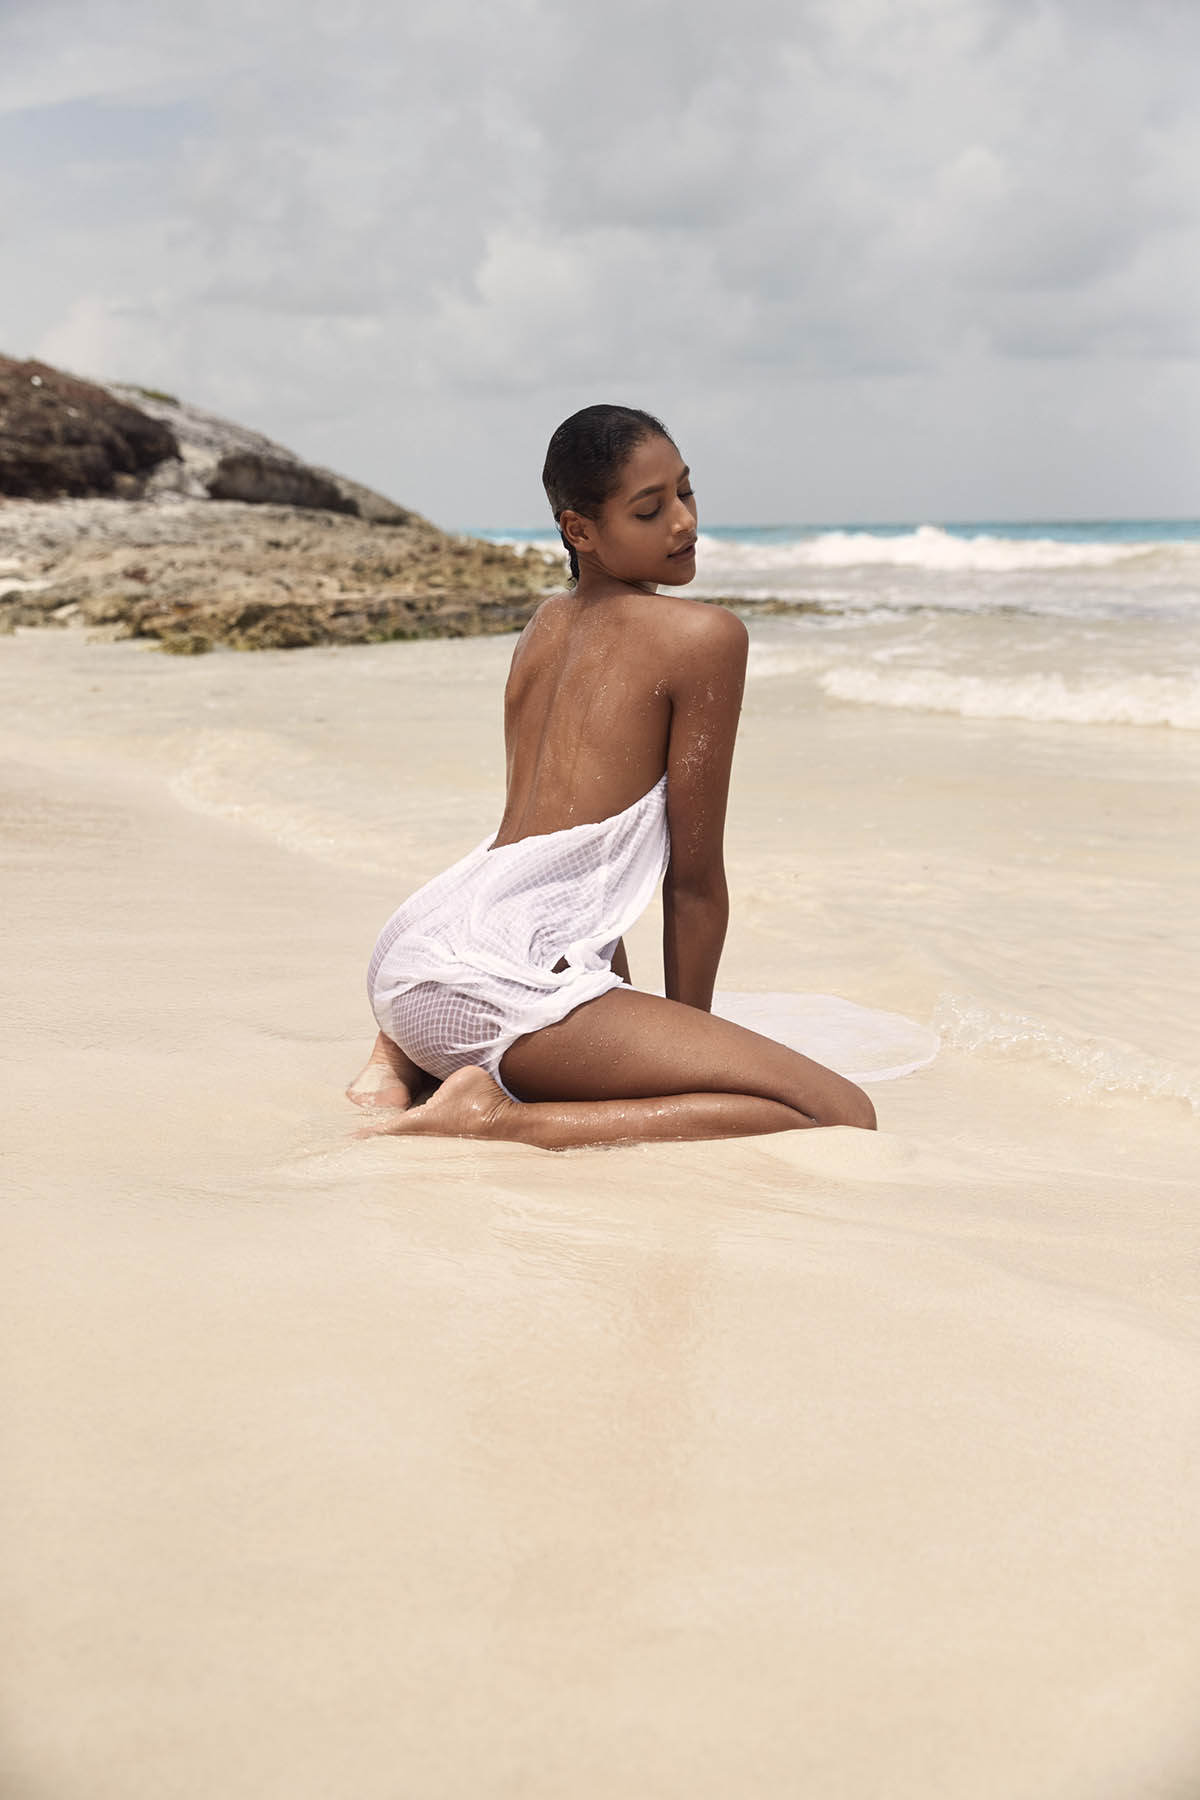 Η μουνάρα μοντέλο Rossy Herrera σε γυμνές και σέξυ φωτογραφίες